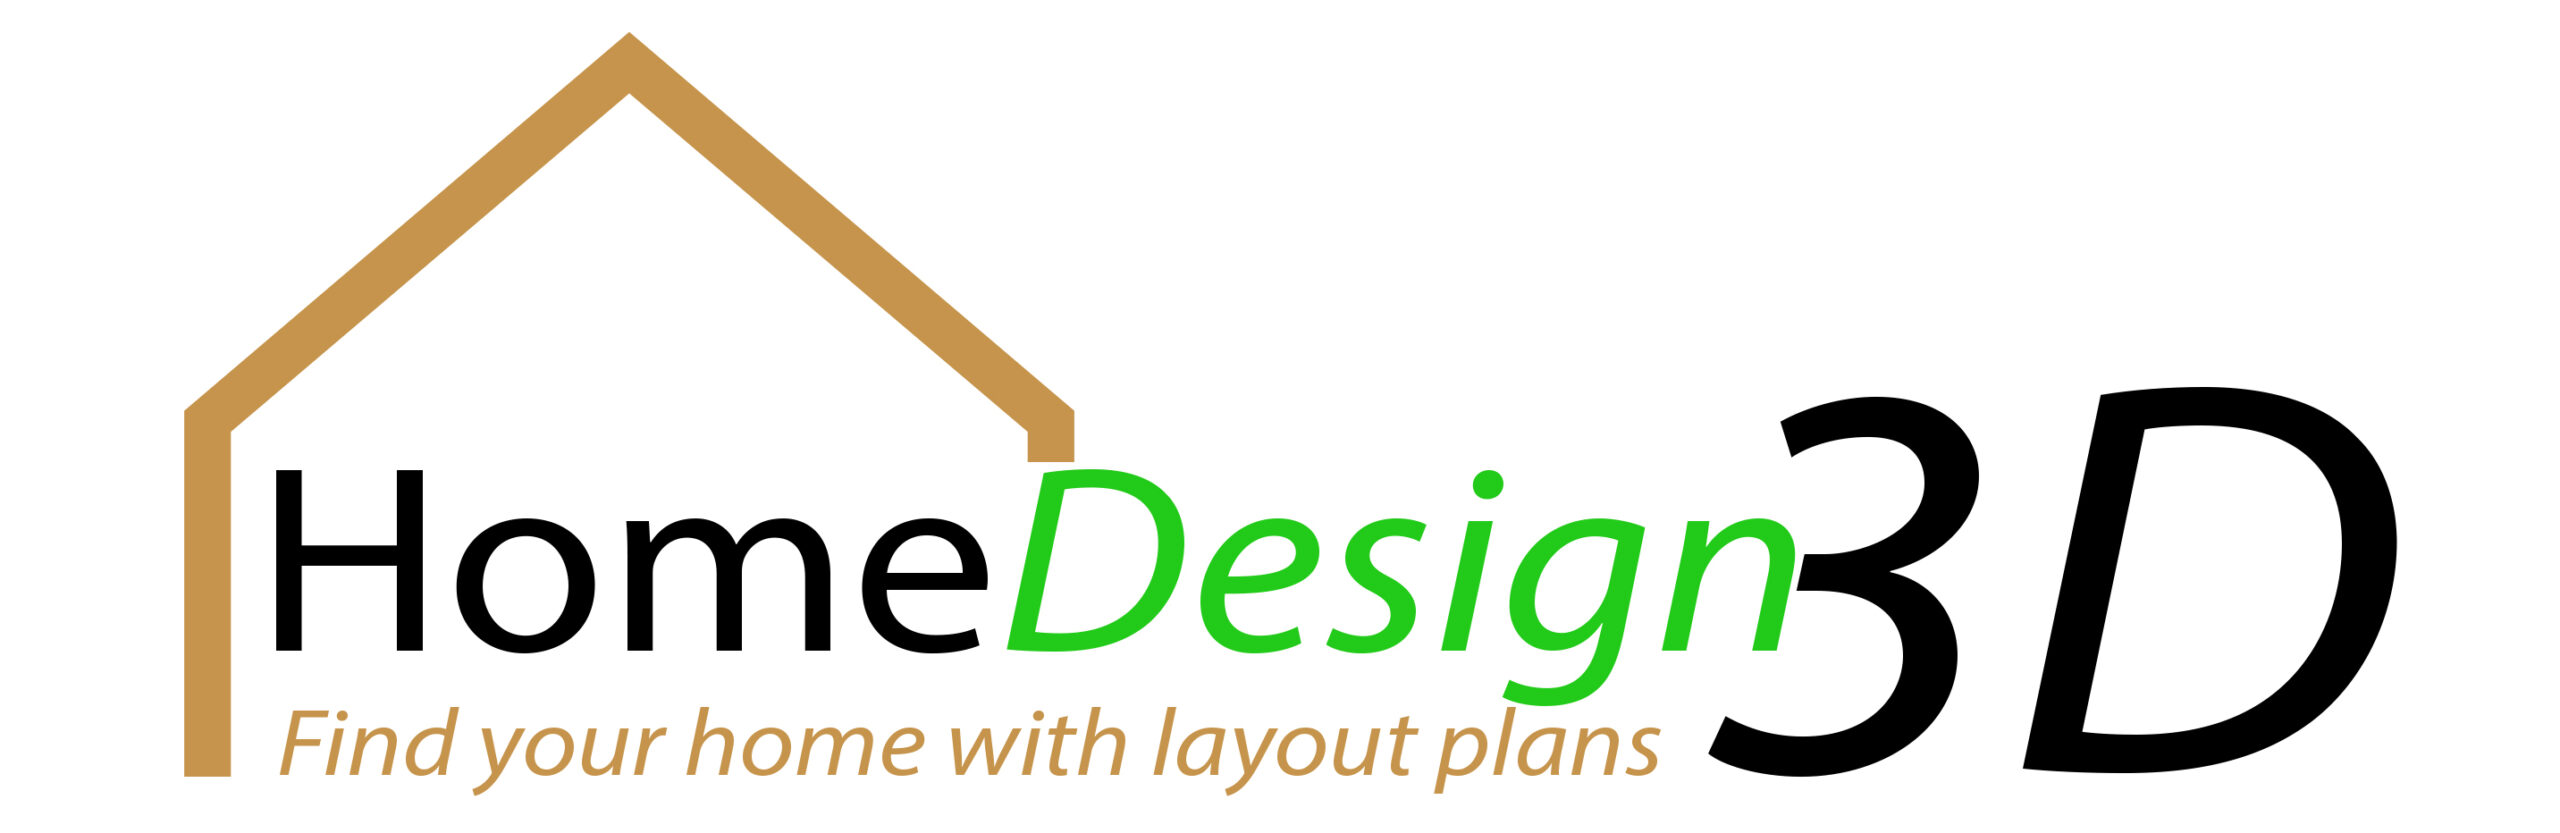 Home design 3d logo